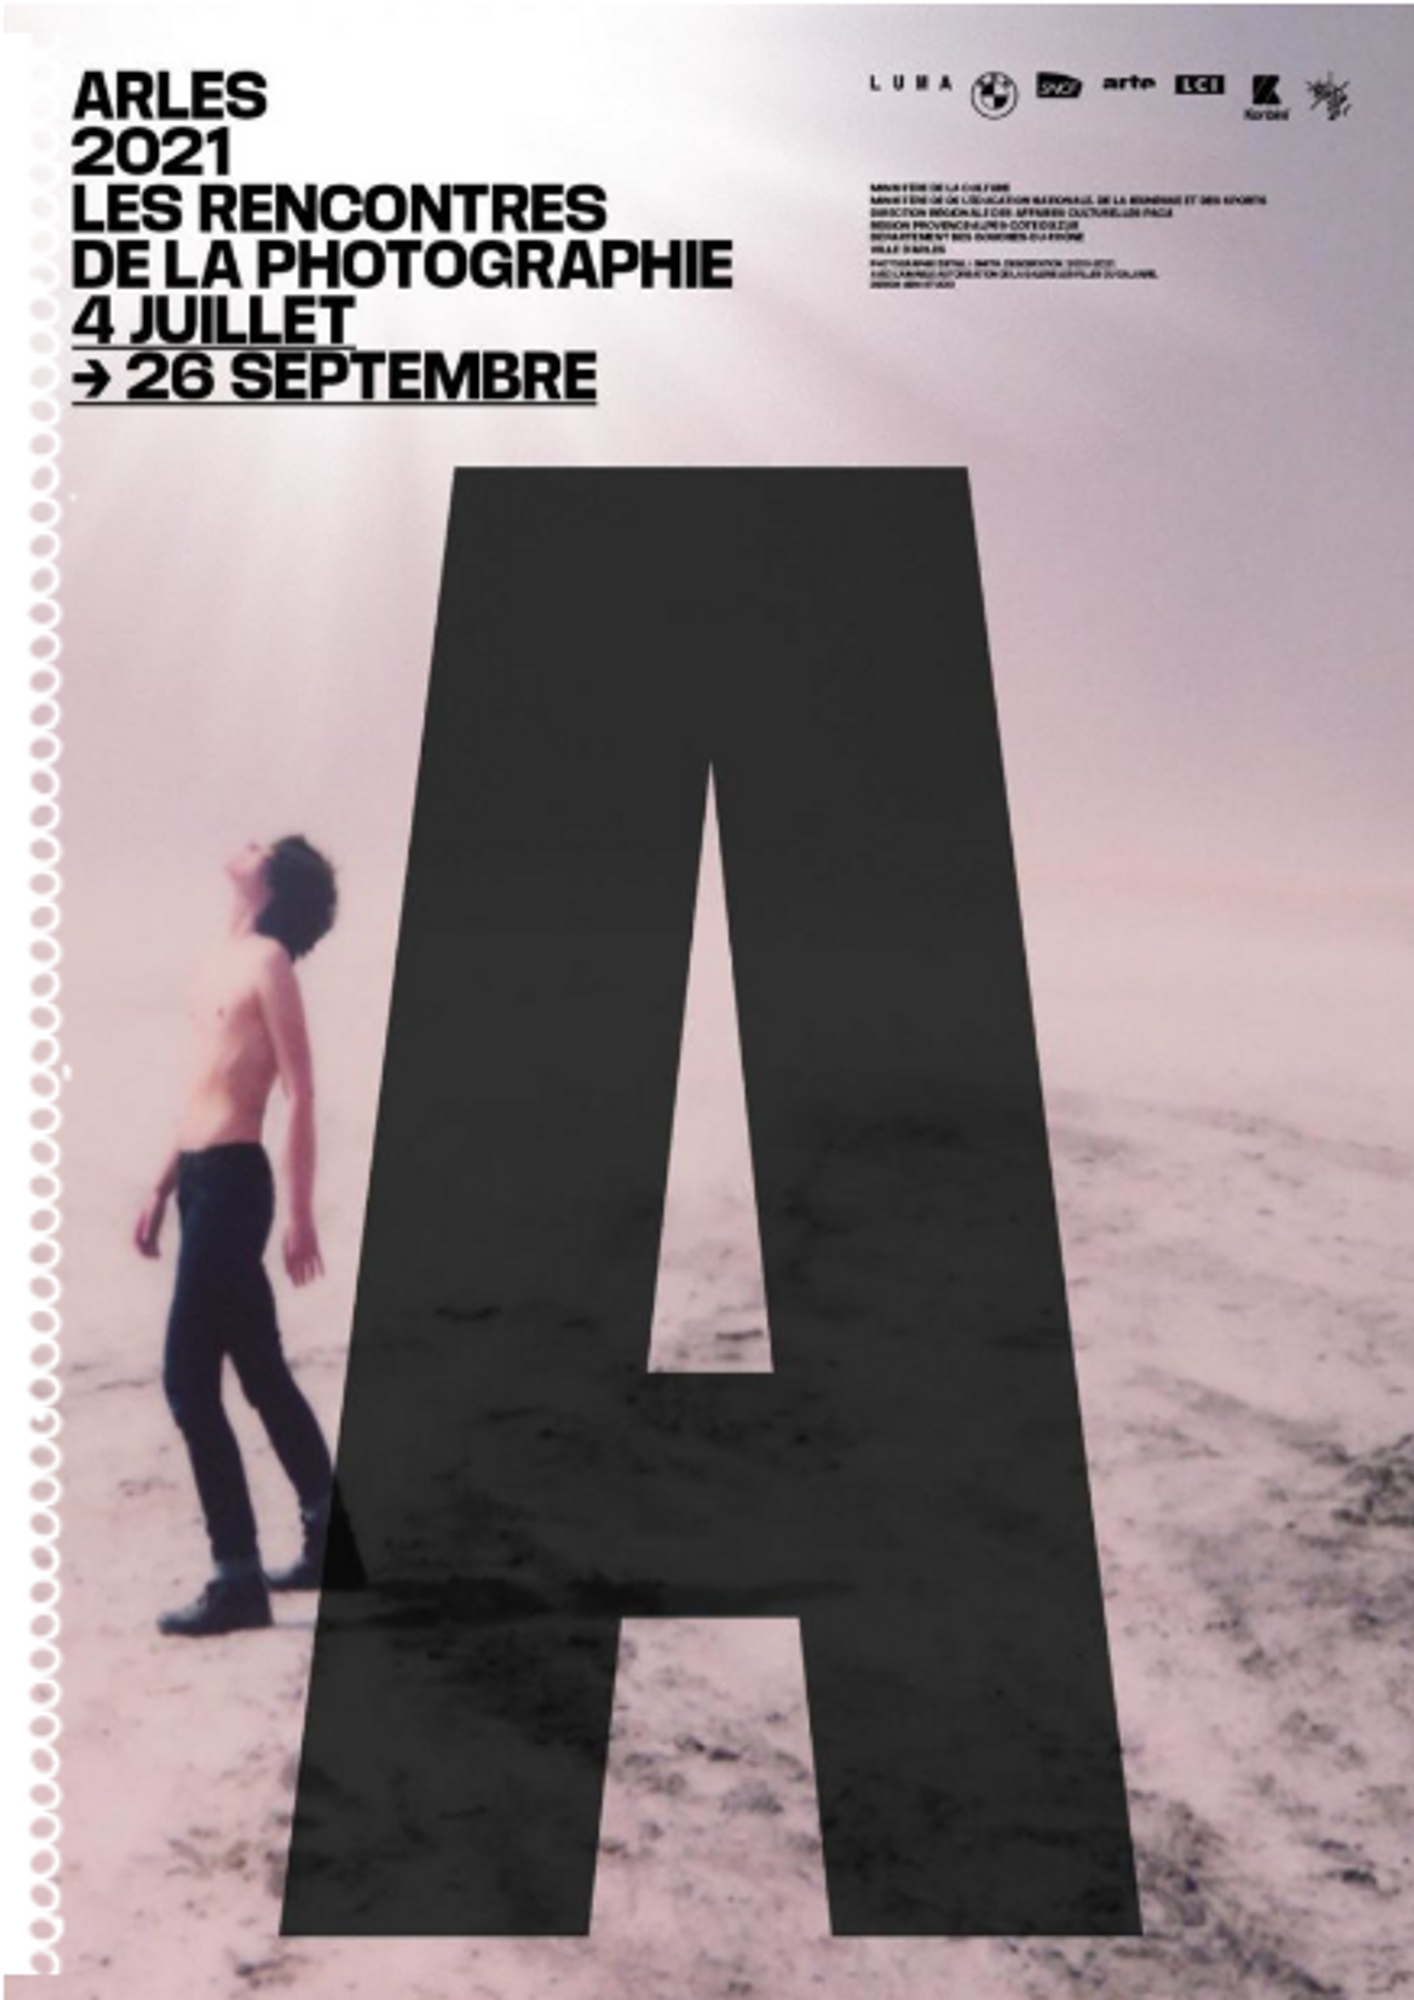 [ CULTURE/LOISIR ] Arles: La 52e éd. des Rencontres de la photographie du 4 juillet au 26 septembre 